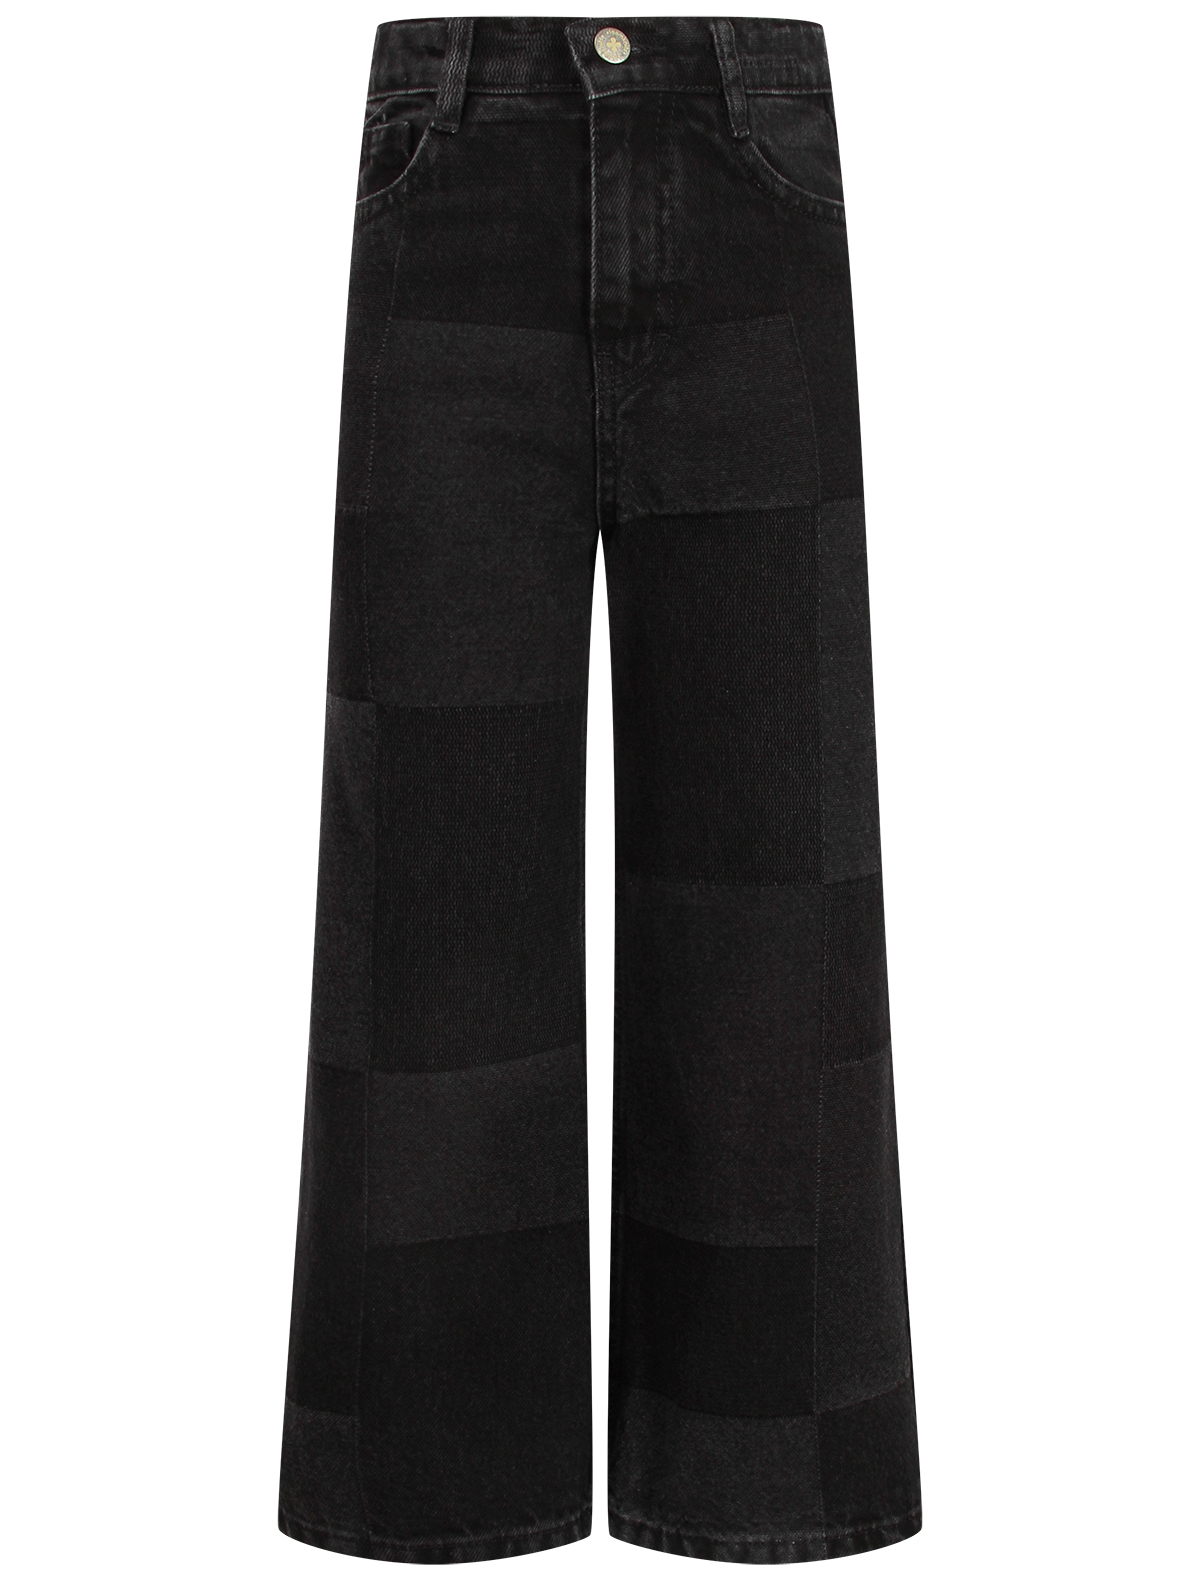 джинсы loom для девочки, черные